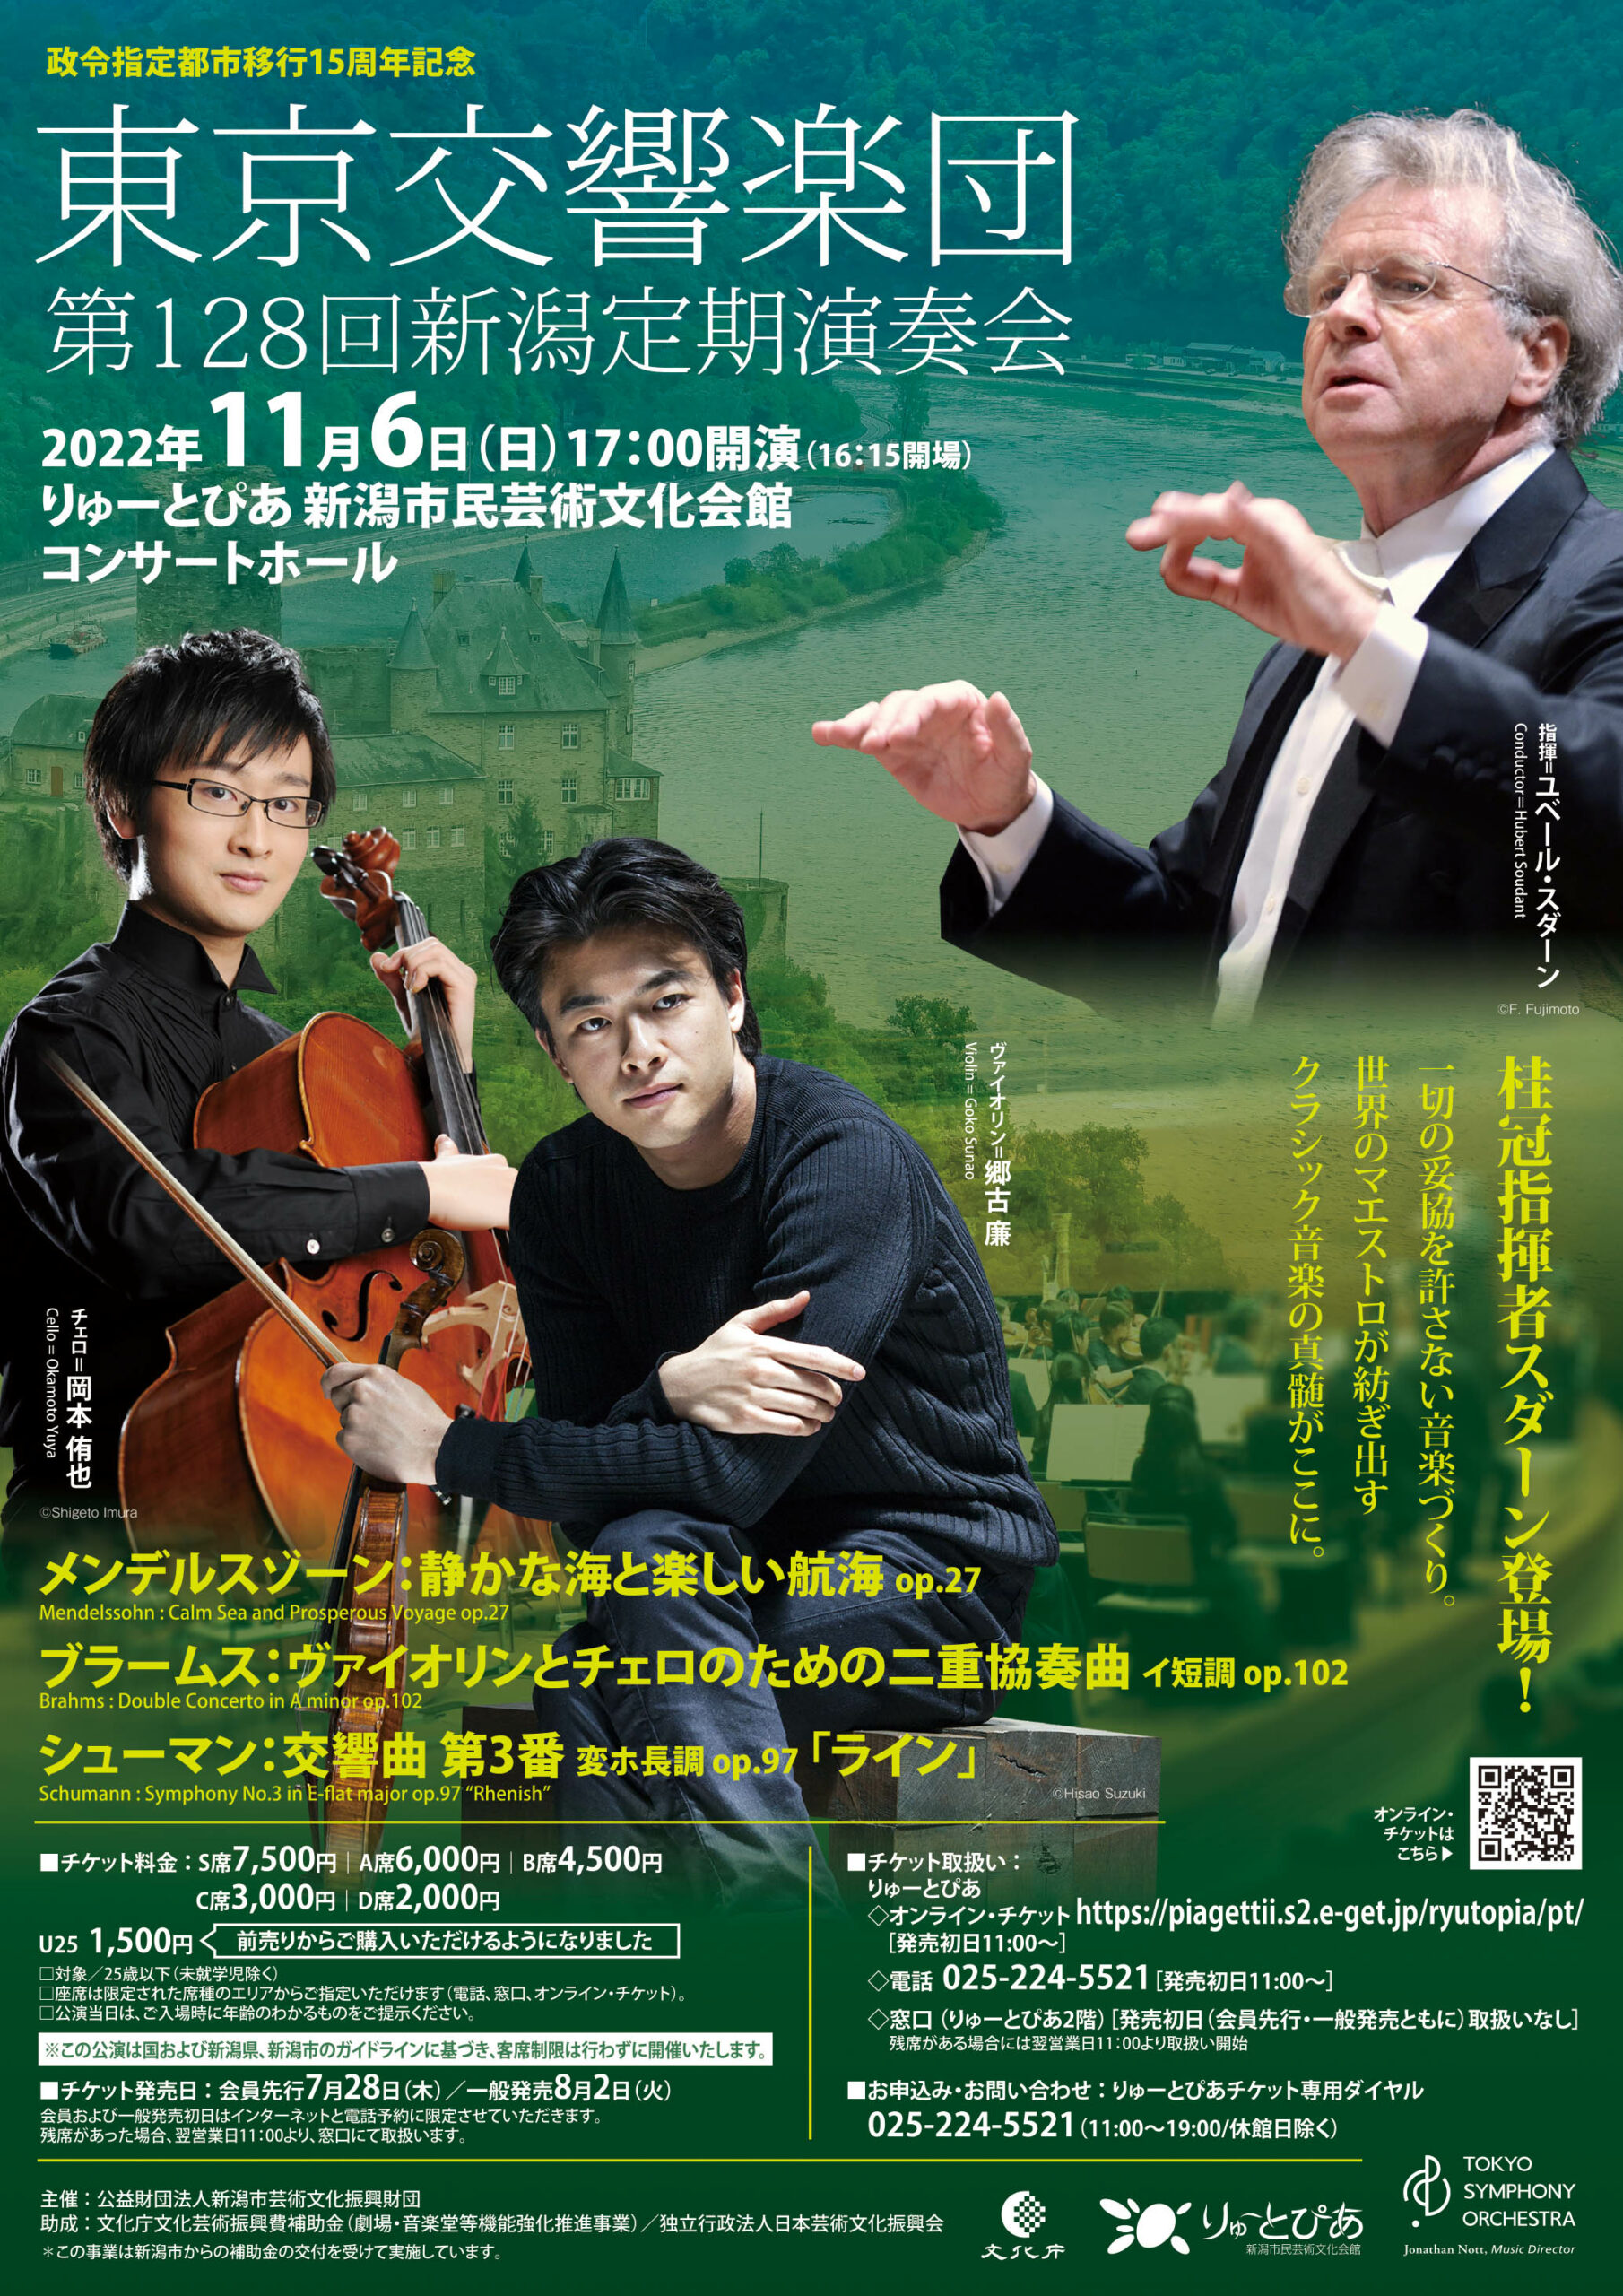 東京交響楽団 第128回新潟定期演奏会 | 公演情報 - りゅーとぴあ 新潟